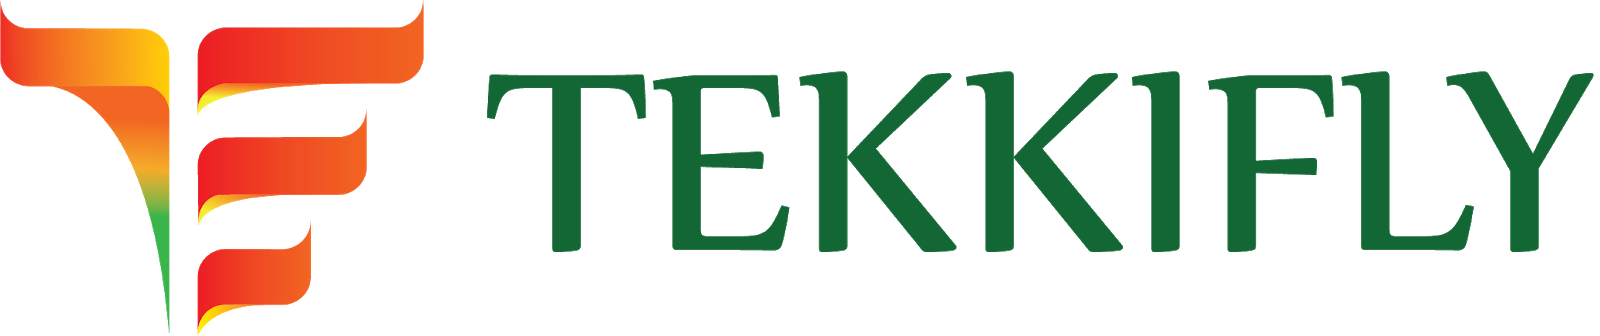 Tekkifly-Welcome to tekkifly